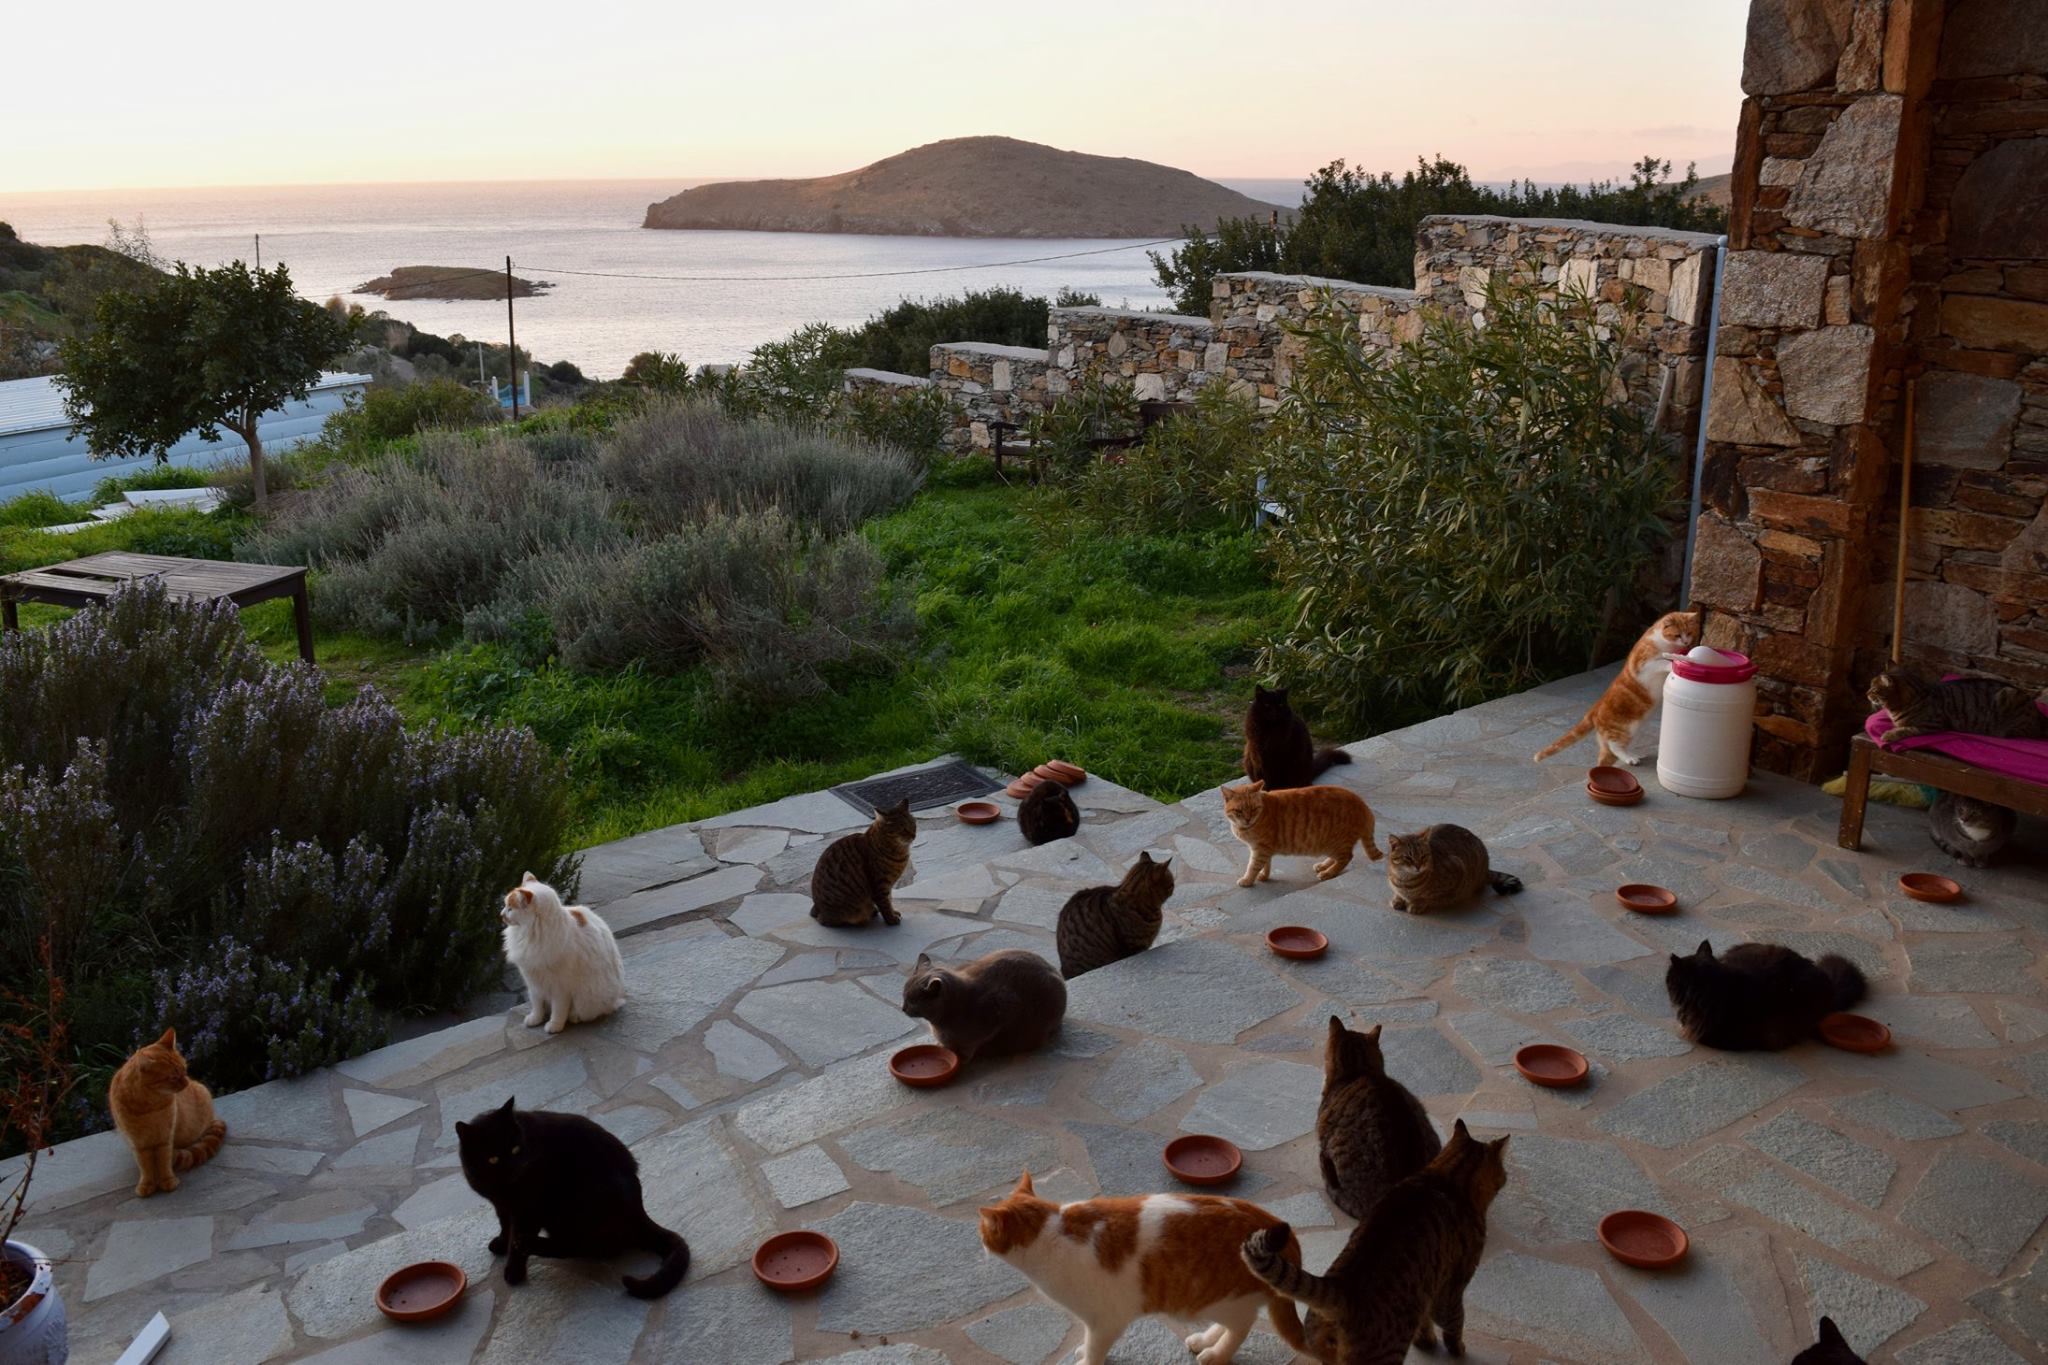 הצעת עבודה לאוהבי חתולים: עם מגורים באי חלומי ביוון ושכר מלא